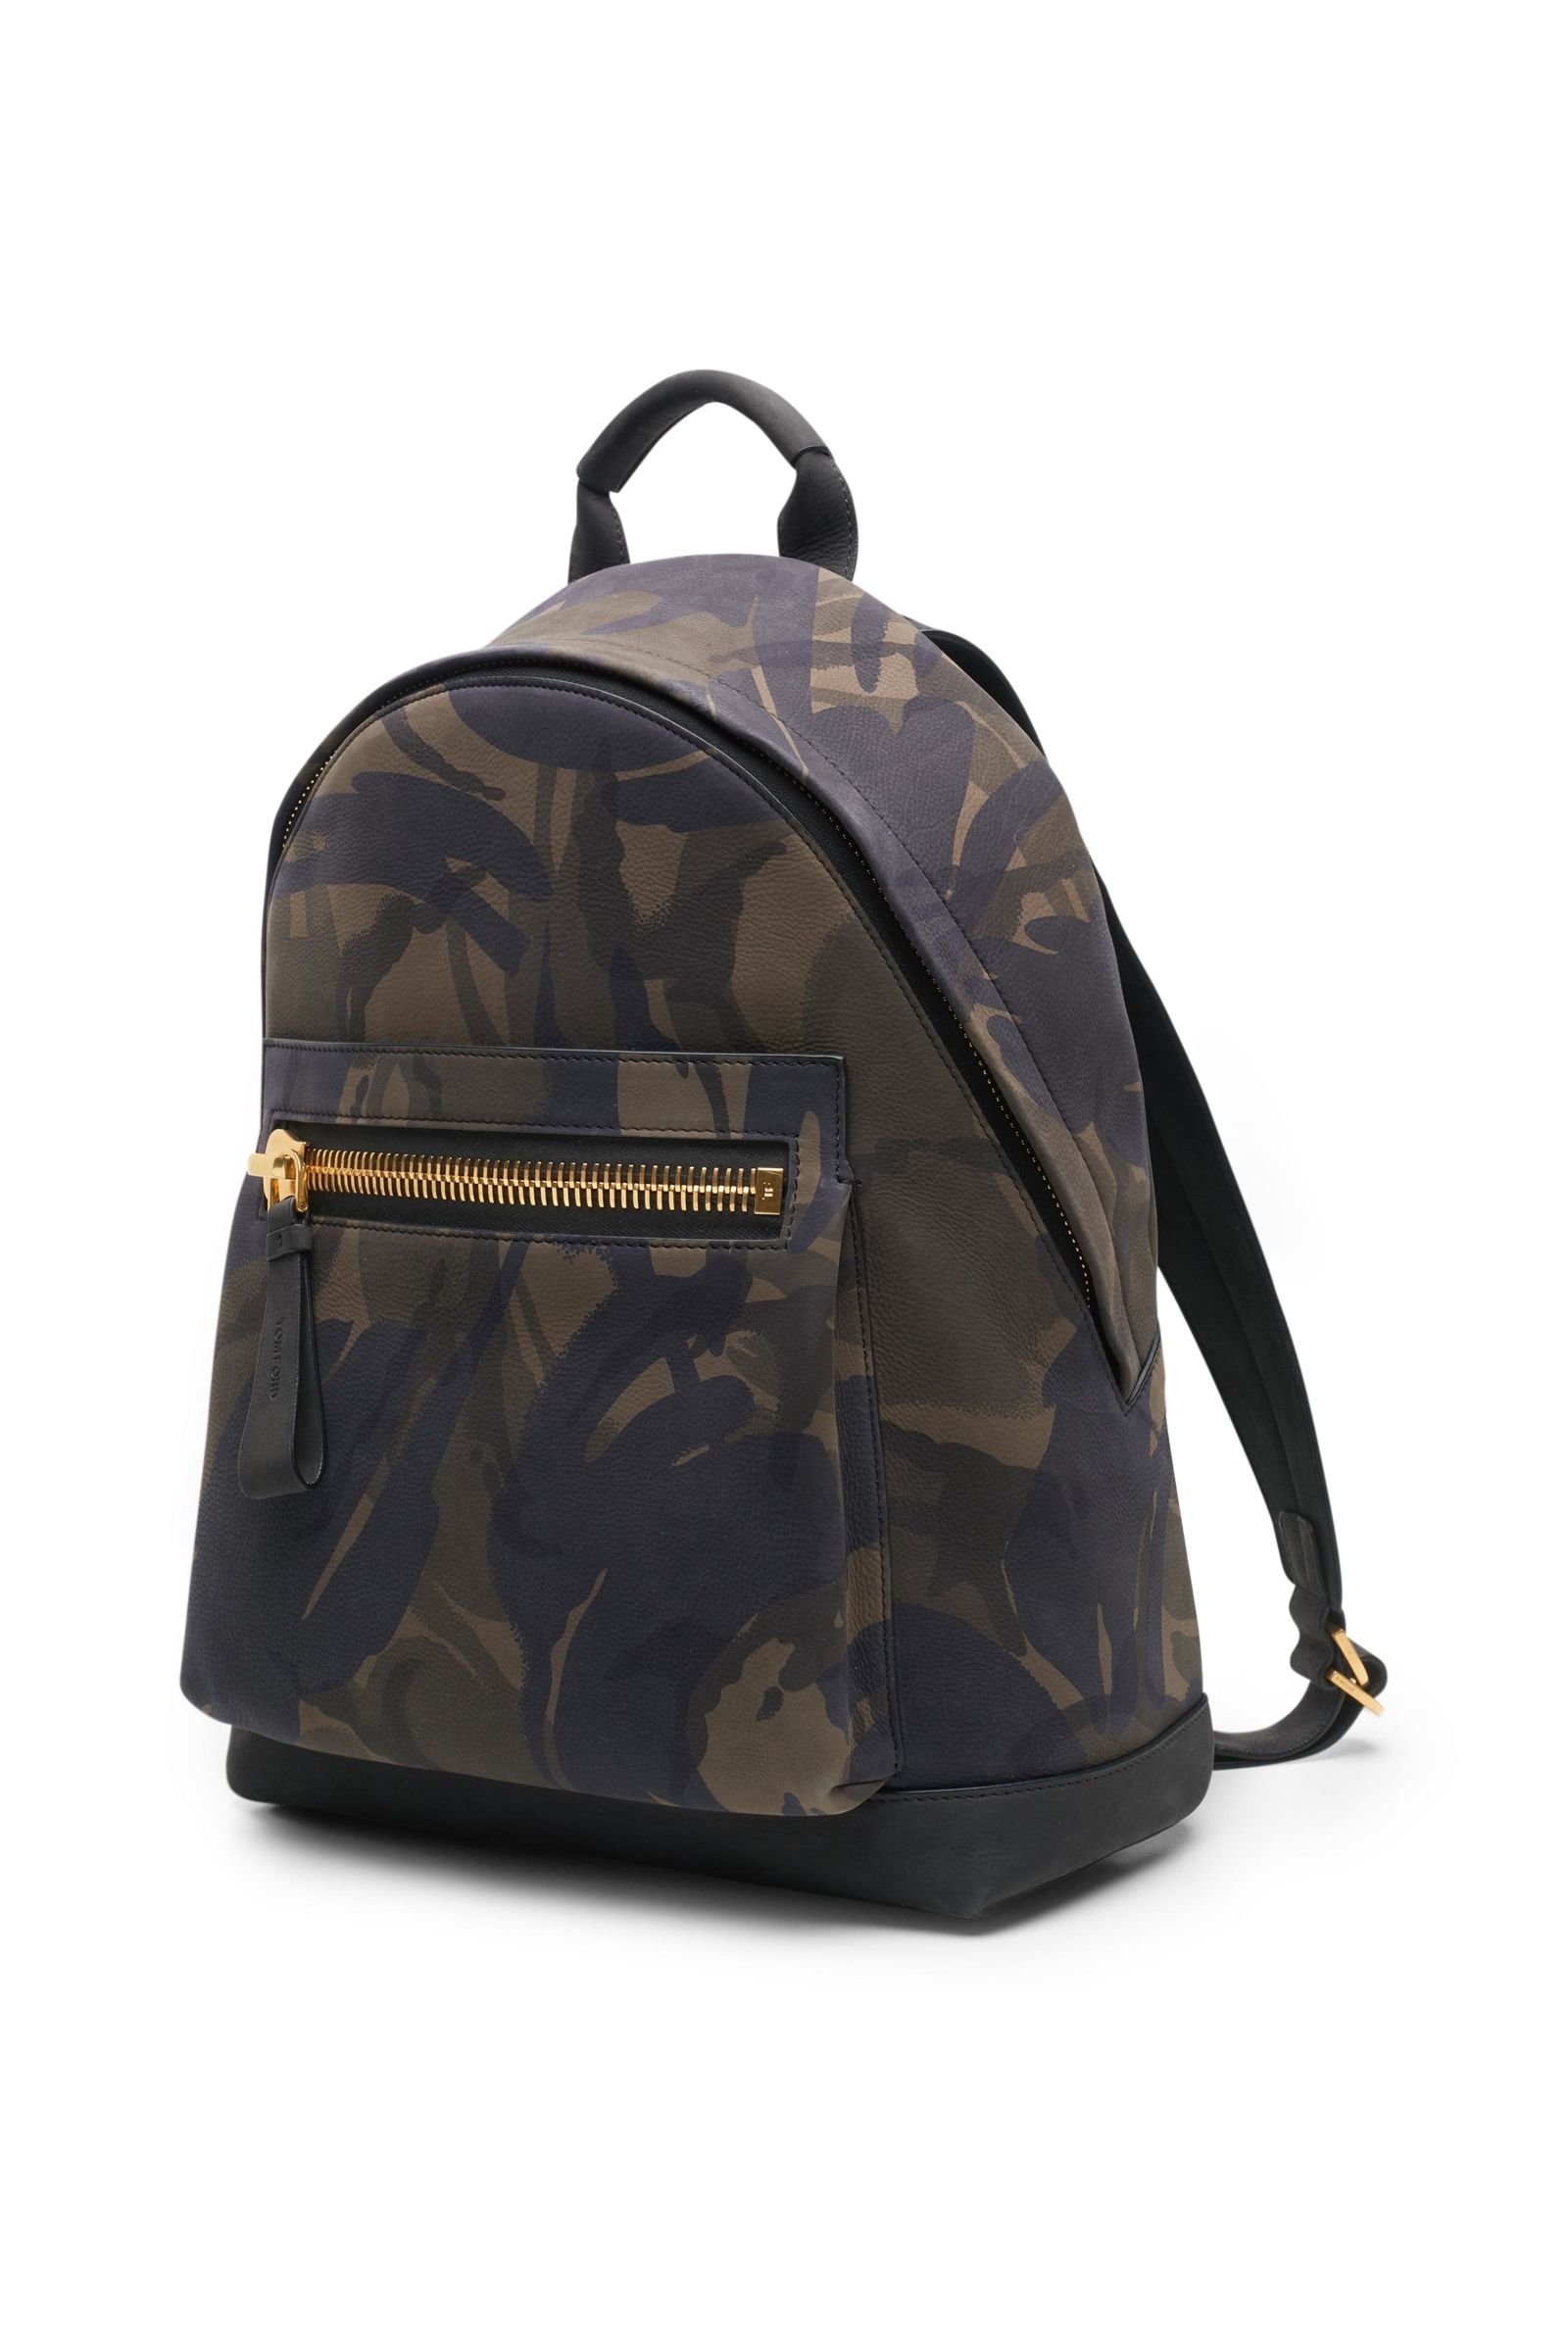 Backpack olive patterned